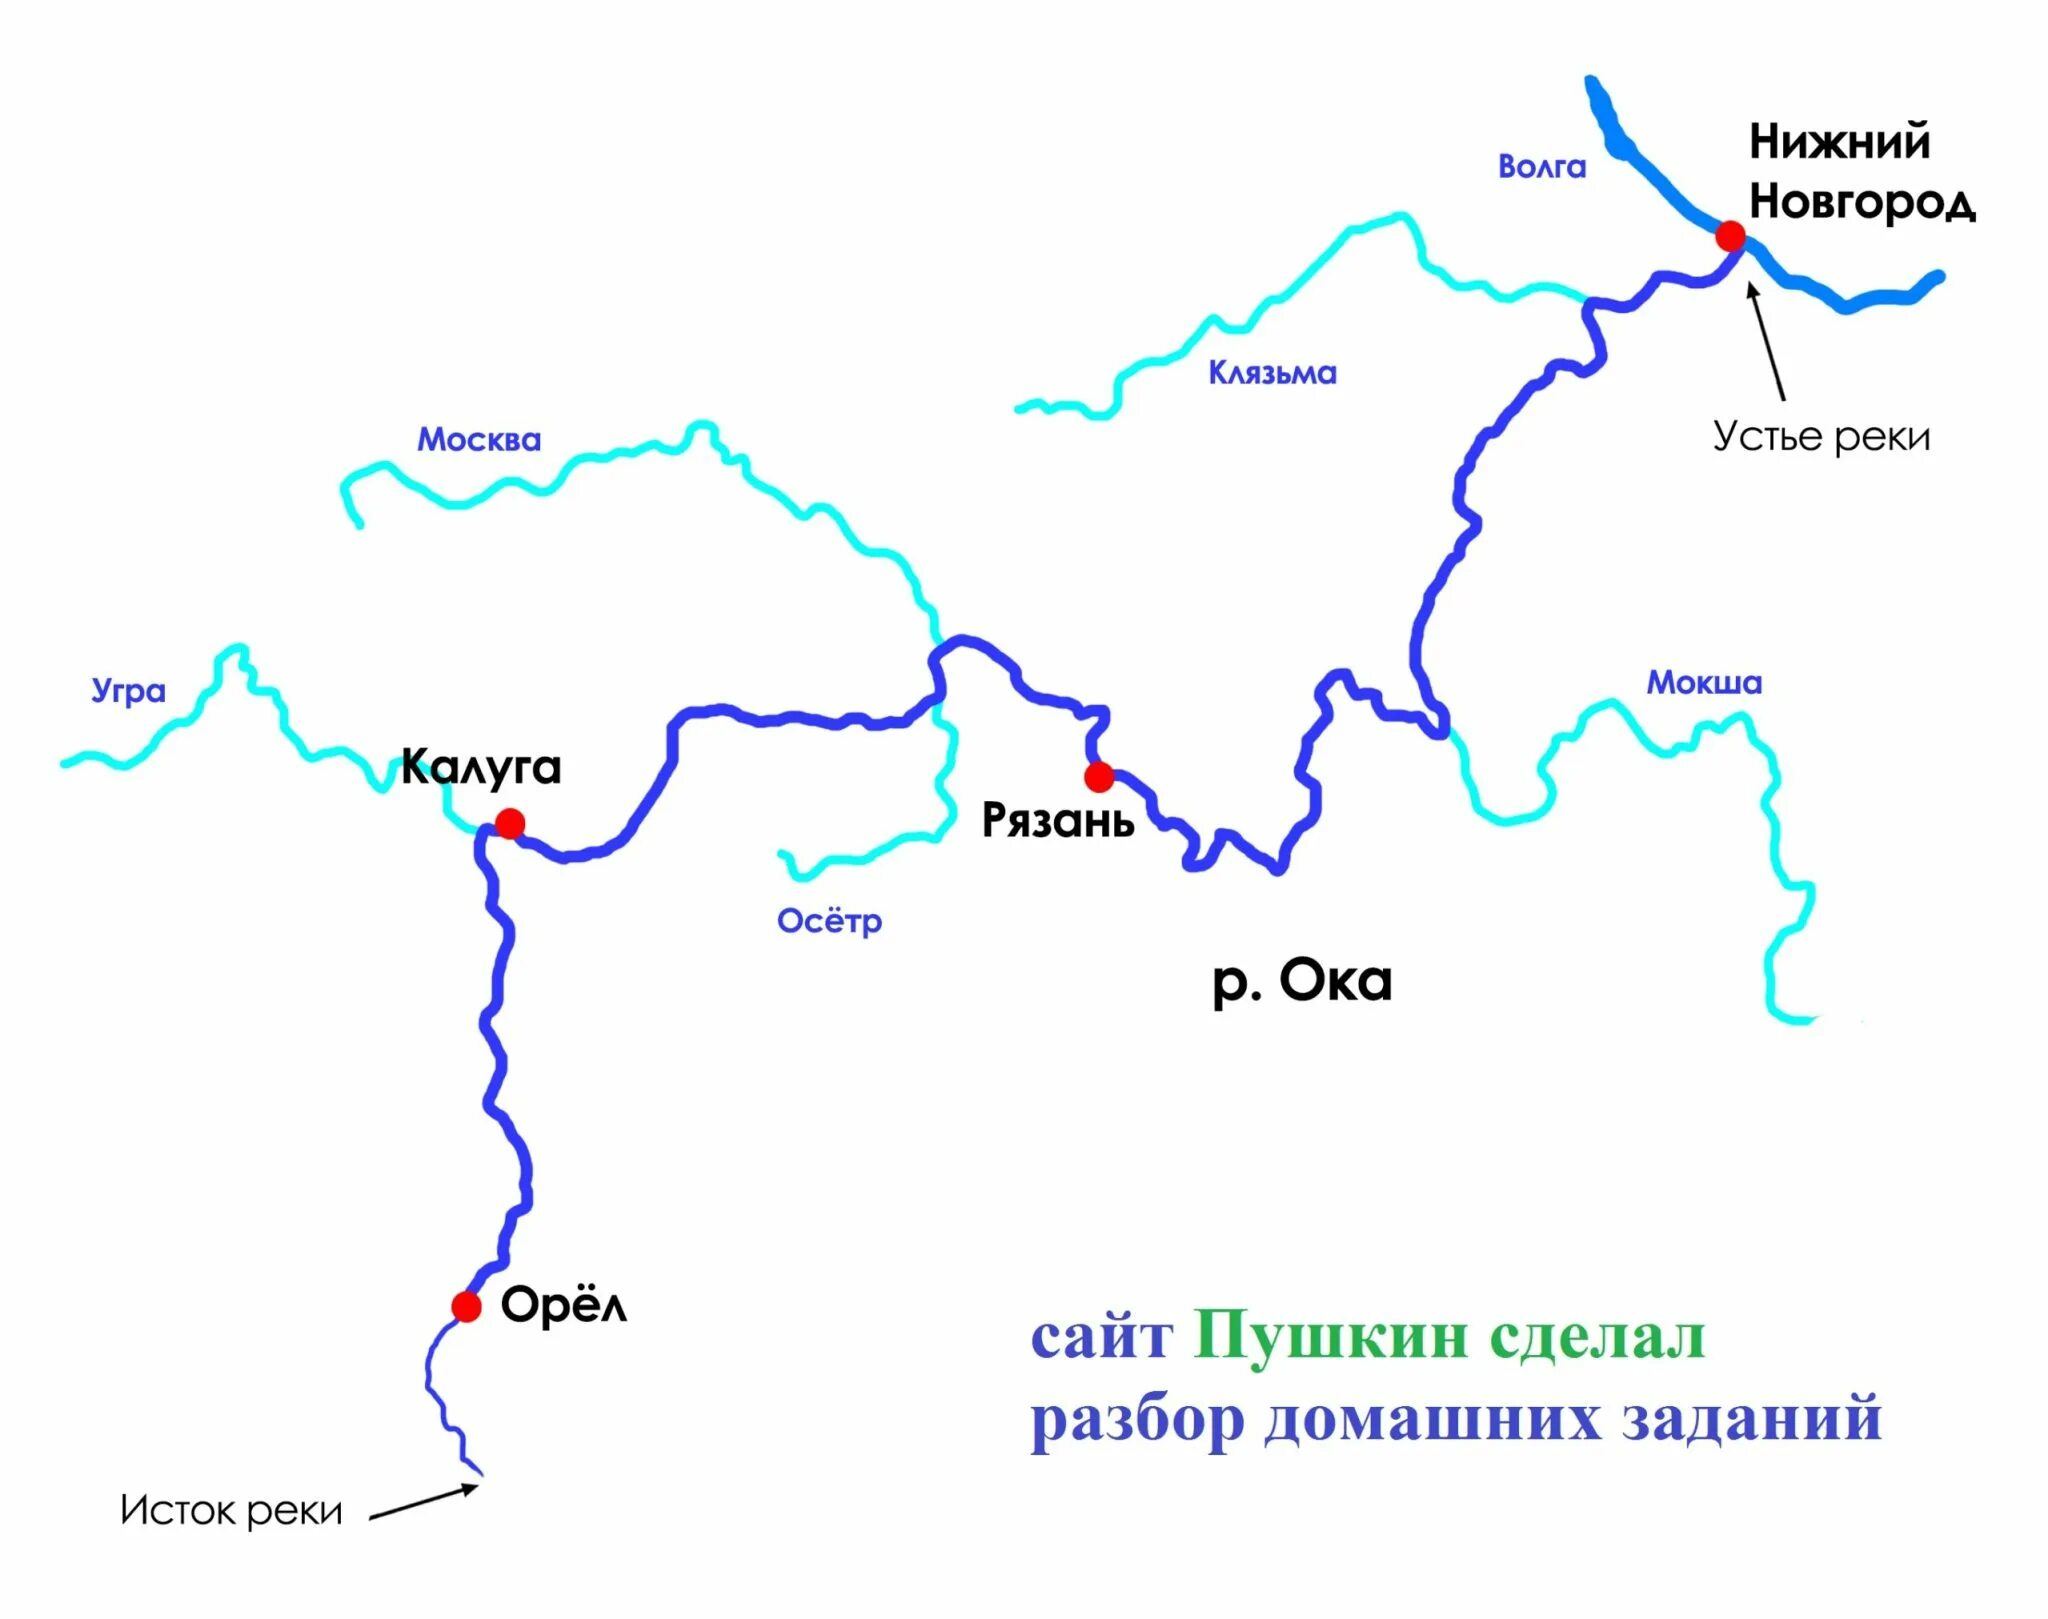 Схема реки Оки. Исток реки Ока на карте. Схема реки Ока от истока до устья. Схема Речной системы реки Оки.